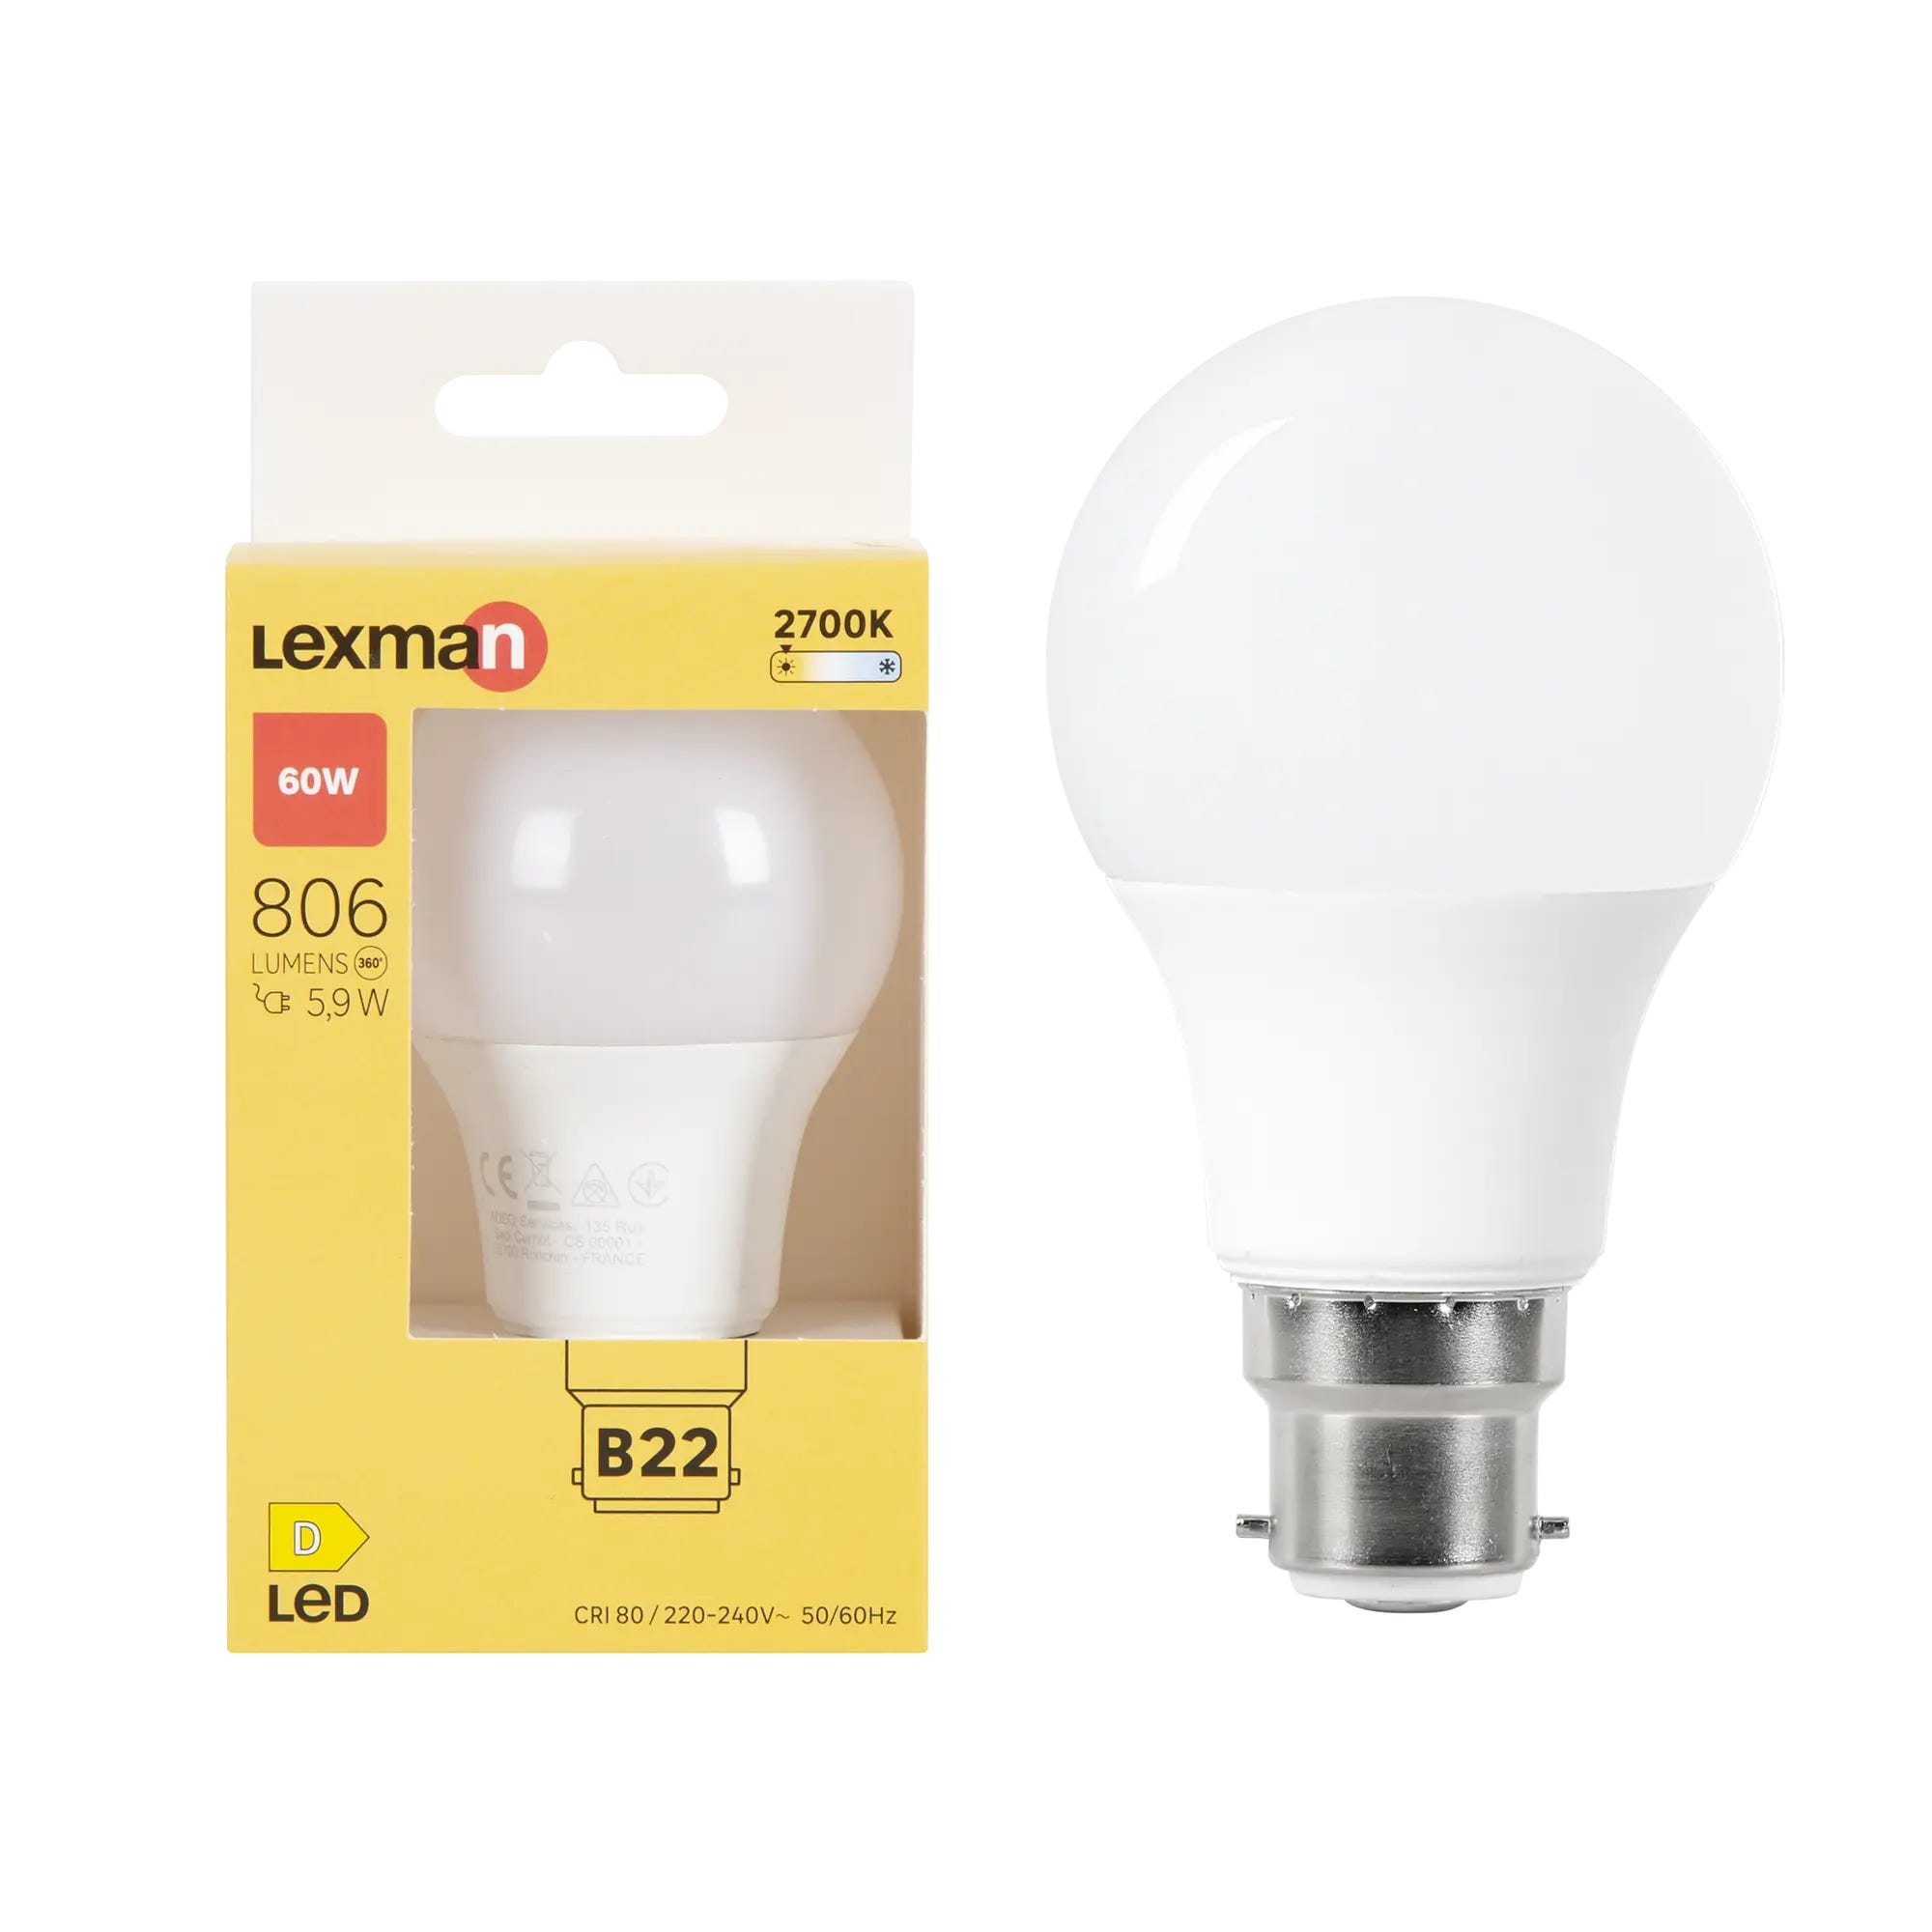 Lot de 6 ampoules led B22, 806Lm = 60W, blanc chaud, LEXMAN